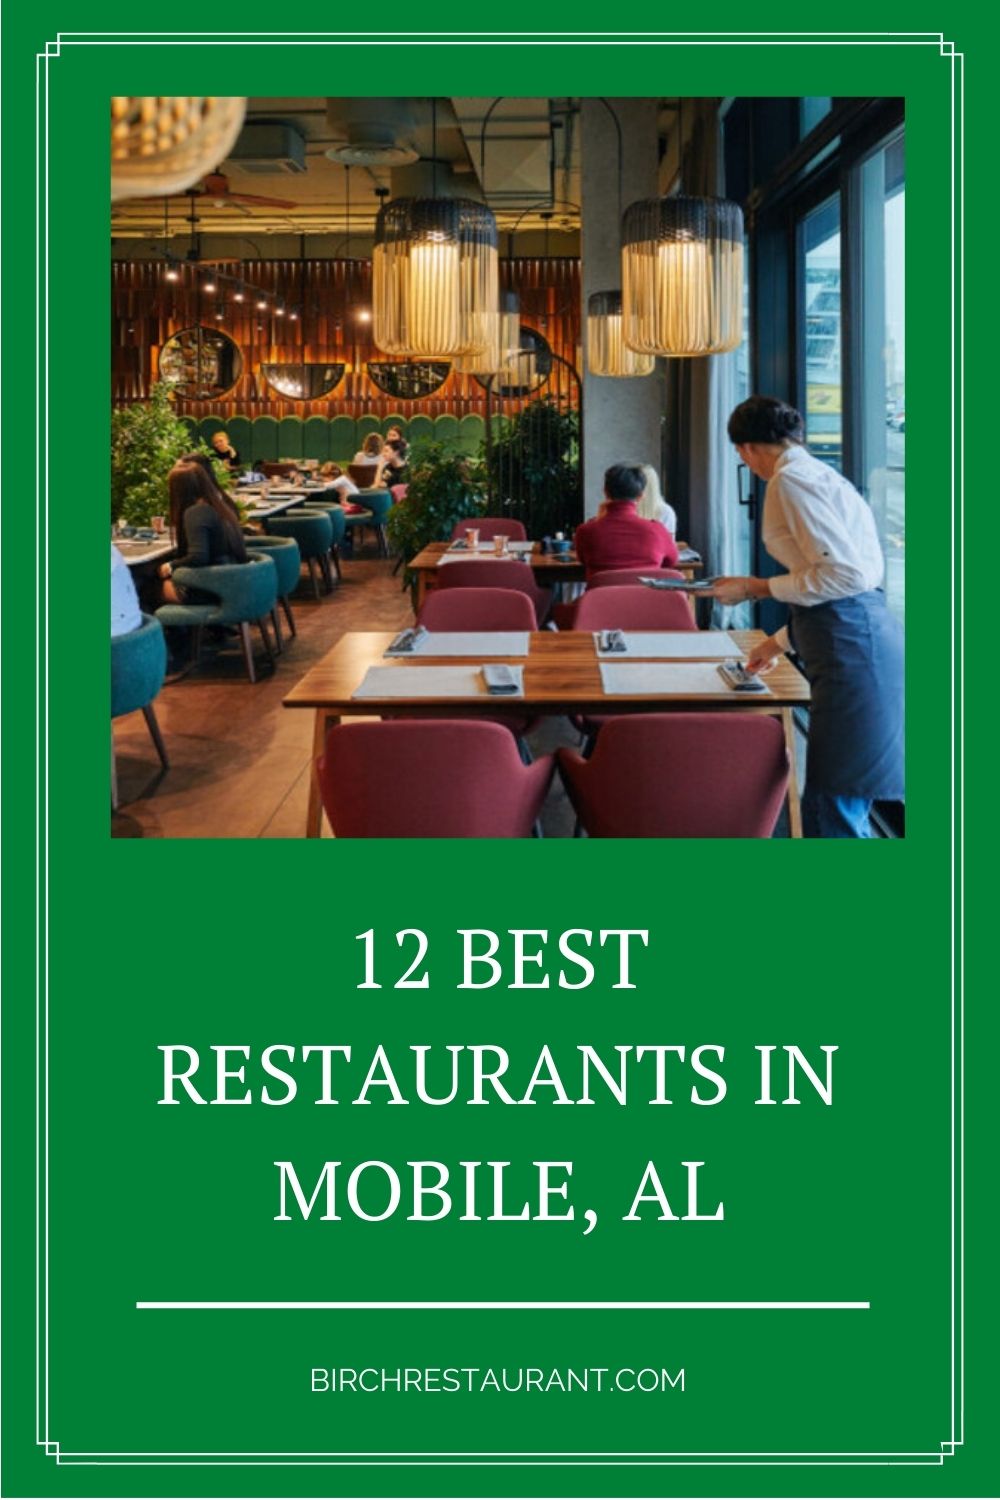 Best Restaurants in Mobile